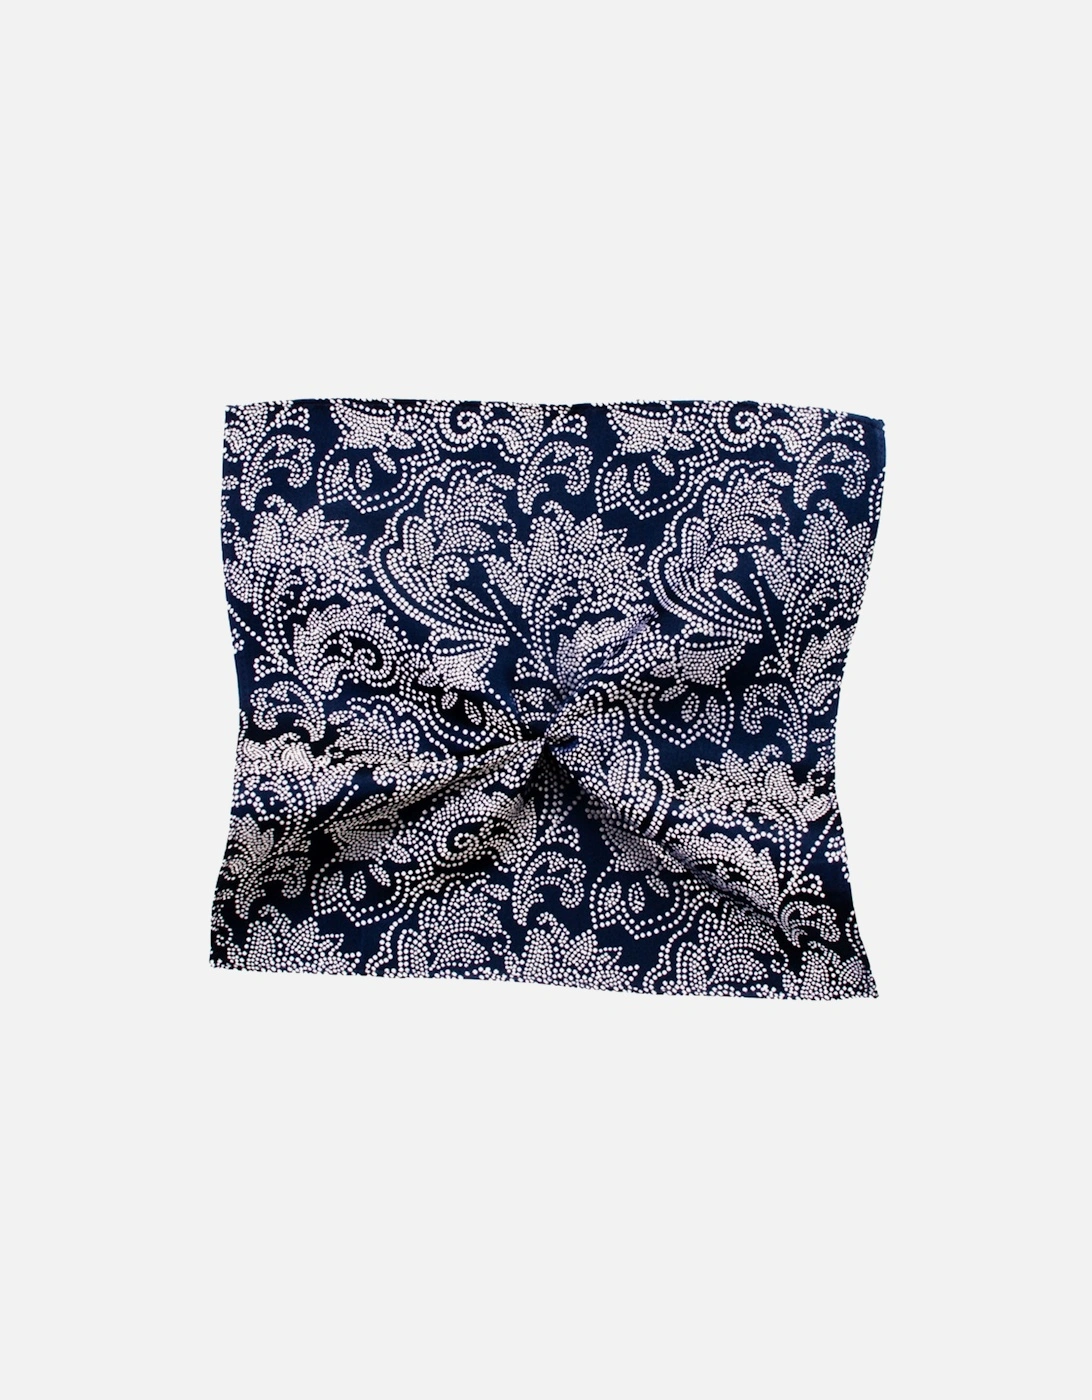 Mens Silk Pocket Square Handkerchief (Navy), 2 of 1